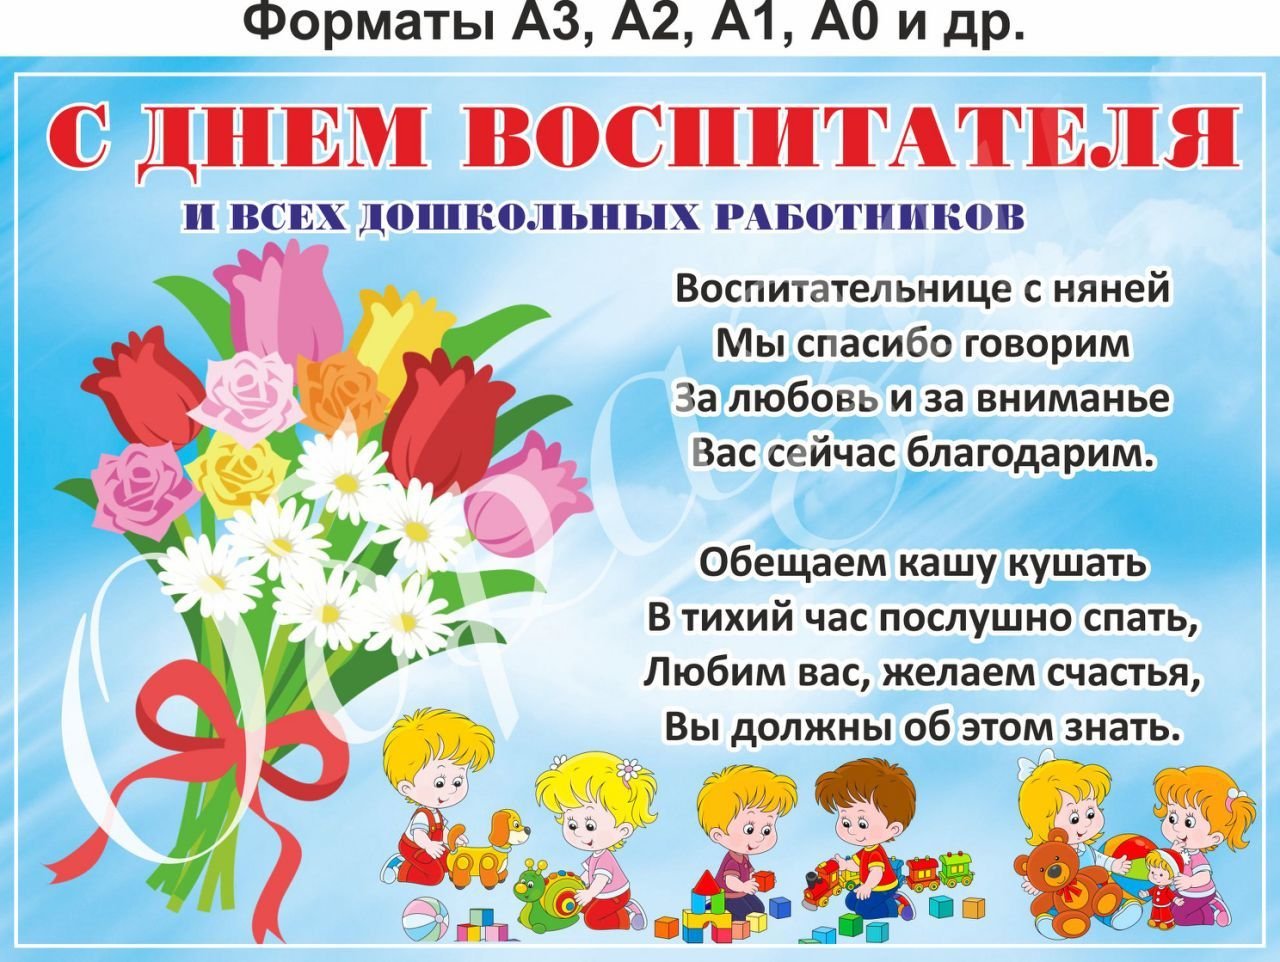 Поздравить детский сад с днем воспитателя. Плакат ко Дню воспитателя. С днем дошкольного работника плакат. С днем воспитателя открытка. С днем воспитателя поздравления.